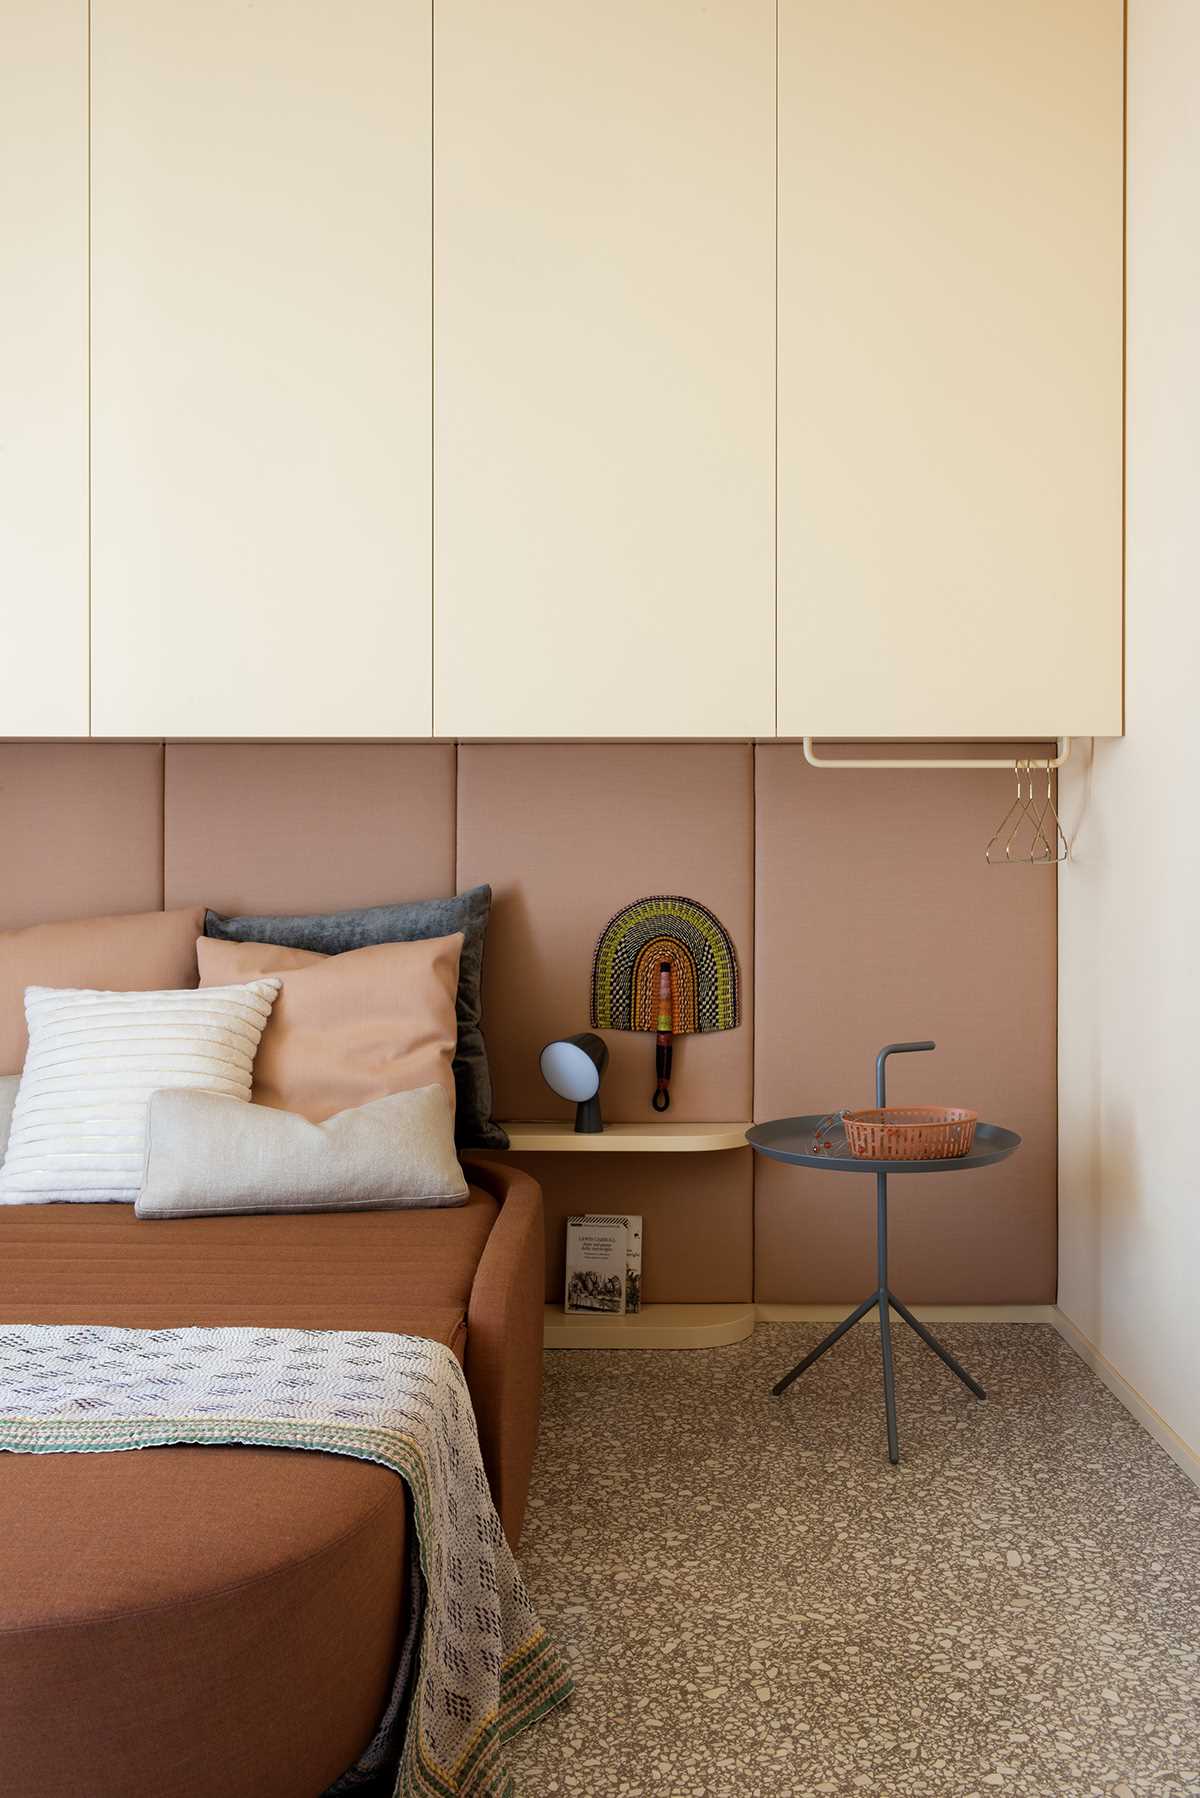 در این اتاق خواب مدرن، یک تخته روکش دار دیوار را می پوشاند، در حالی که کابینت ها بالای تخت قرار دارند.